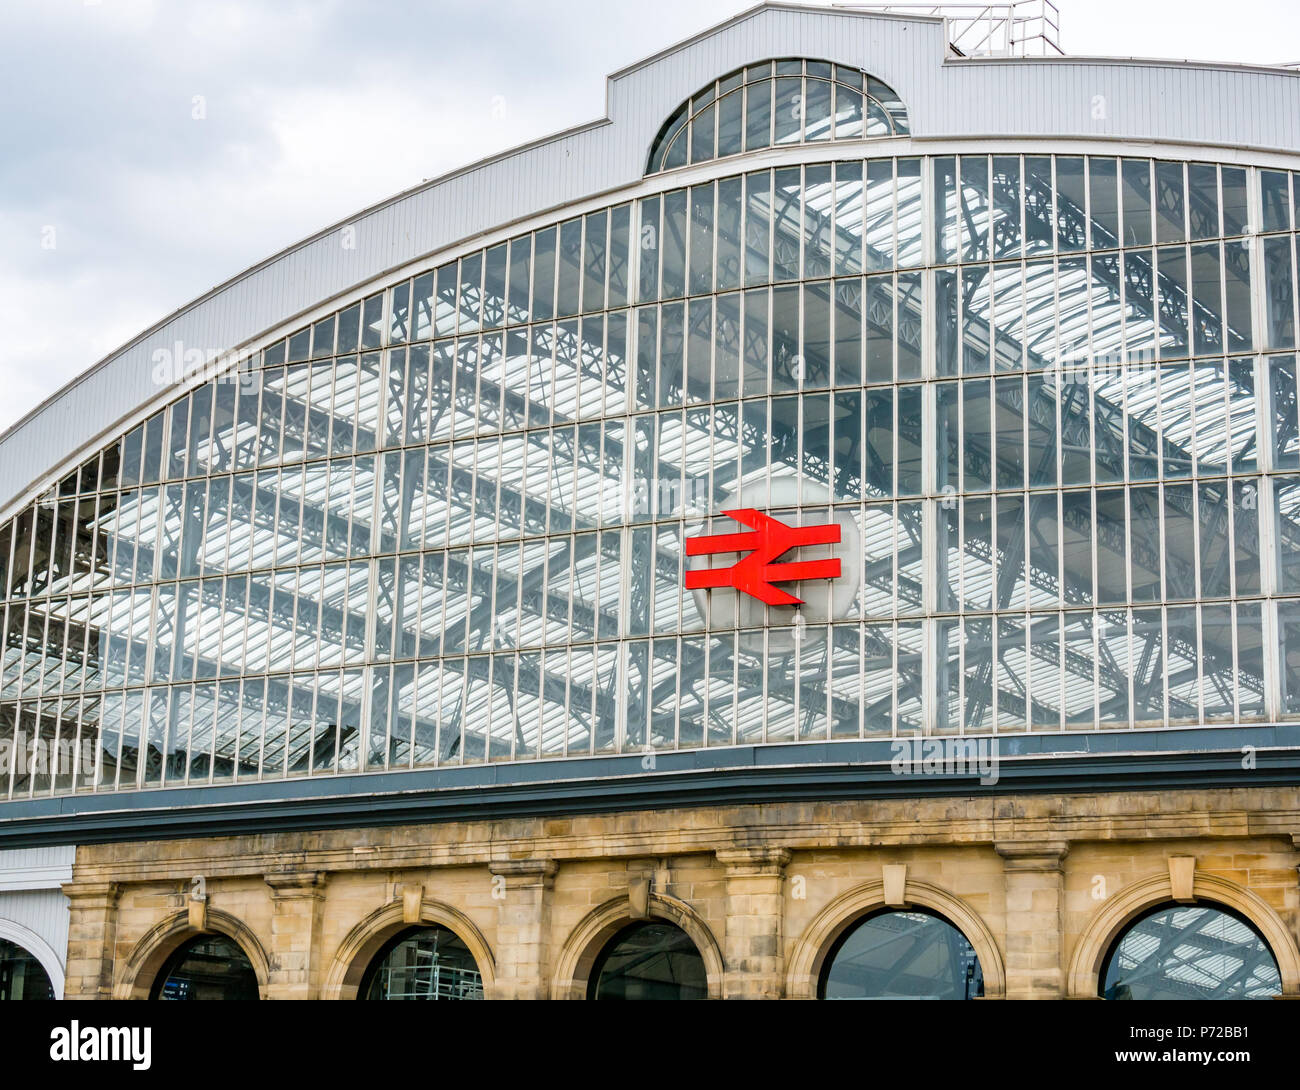 Gewölbten Glasdach von Liverpool Lime Street Bahnhof mit Network Rail Symbol, Liverpool, England, UK Stockfoto